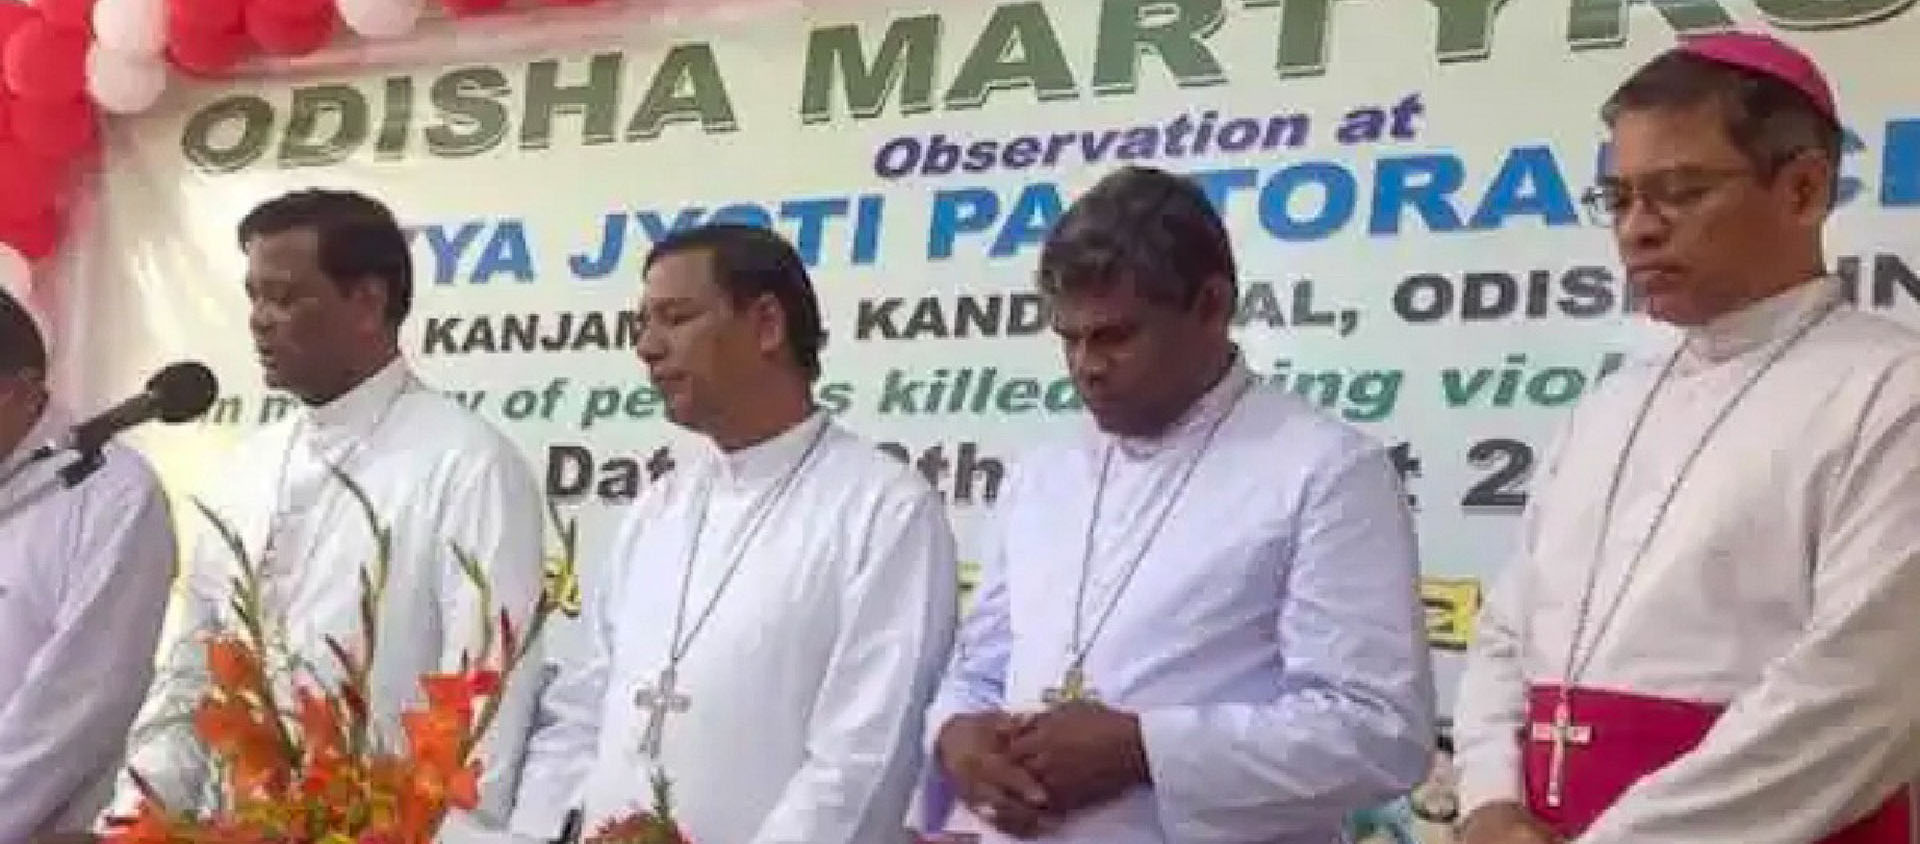 Des évêques indiens rendent hommage aux martyrs de Kandhamal, en 2016 dans l’État d’Odisha, à l’occasion d’une «journée des martyrs» célébrée le 30 août | © Santosh Digal/Ucanews